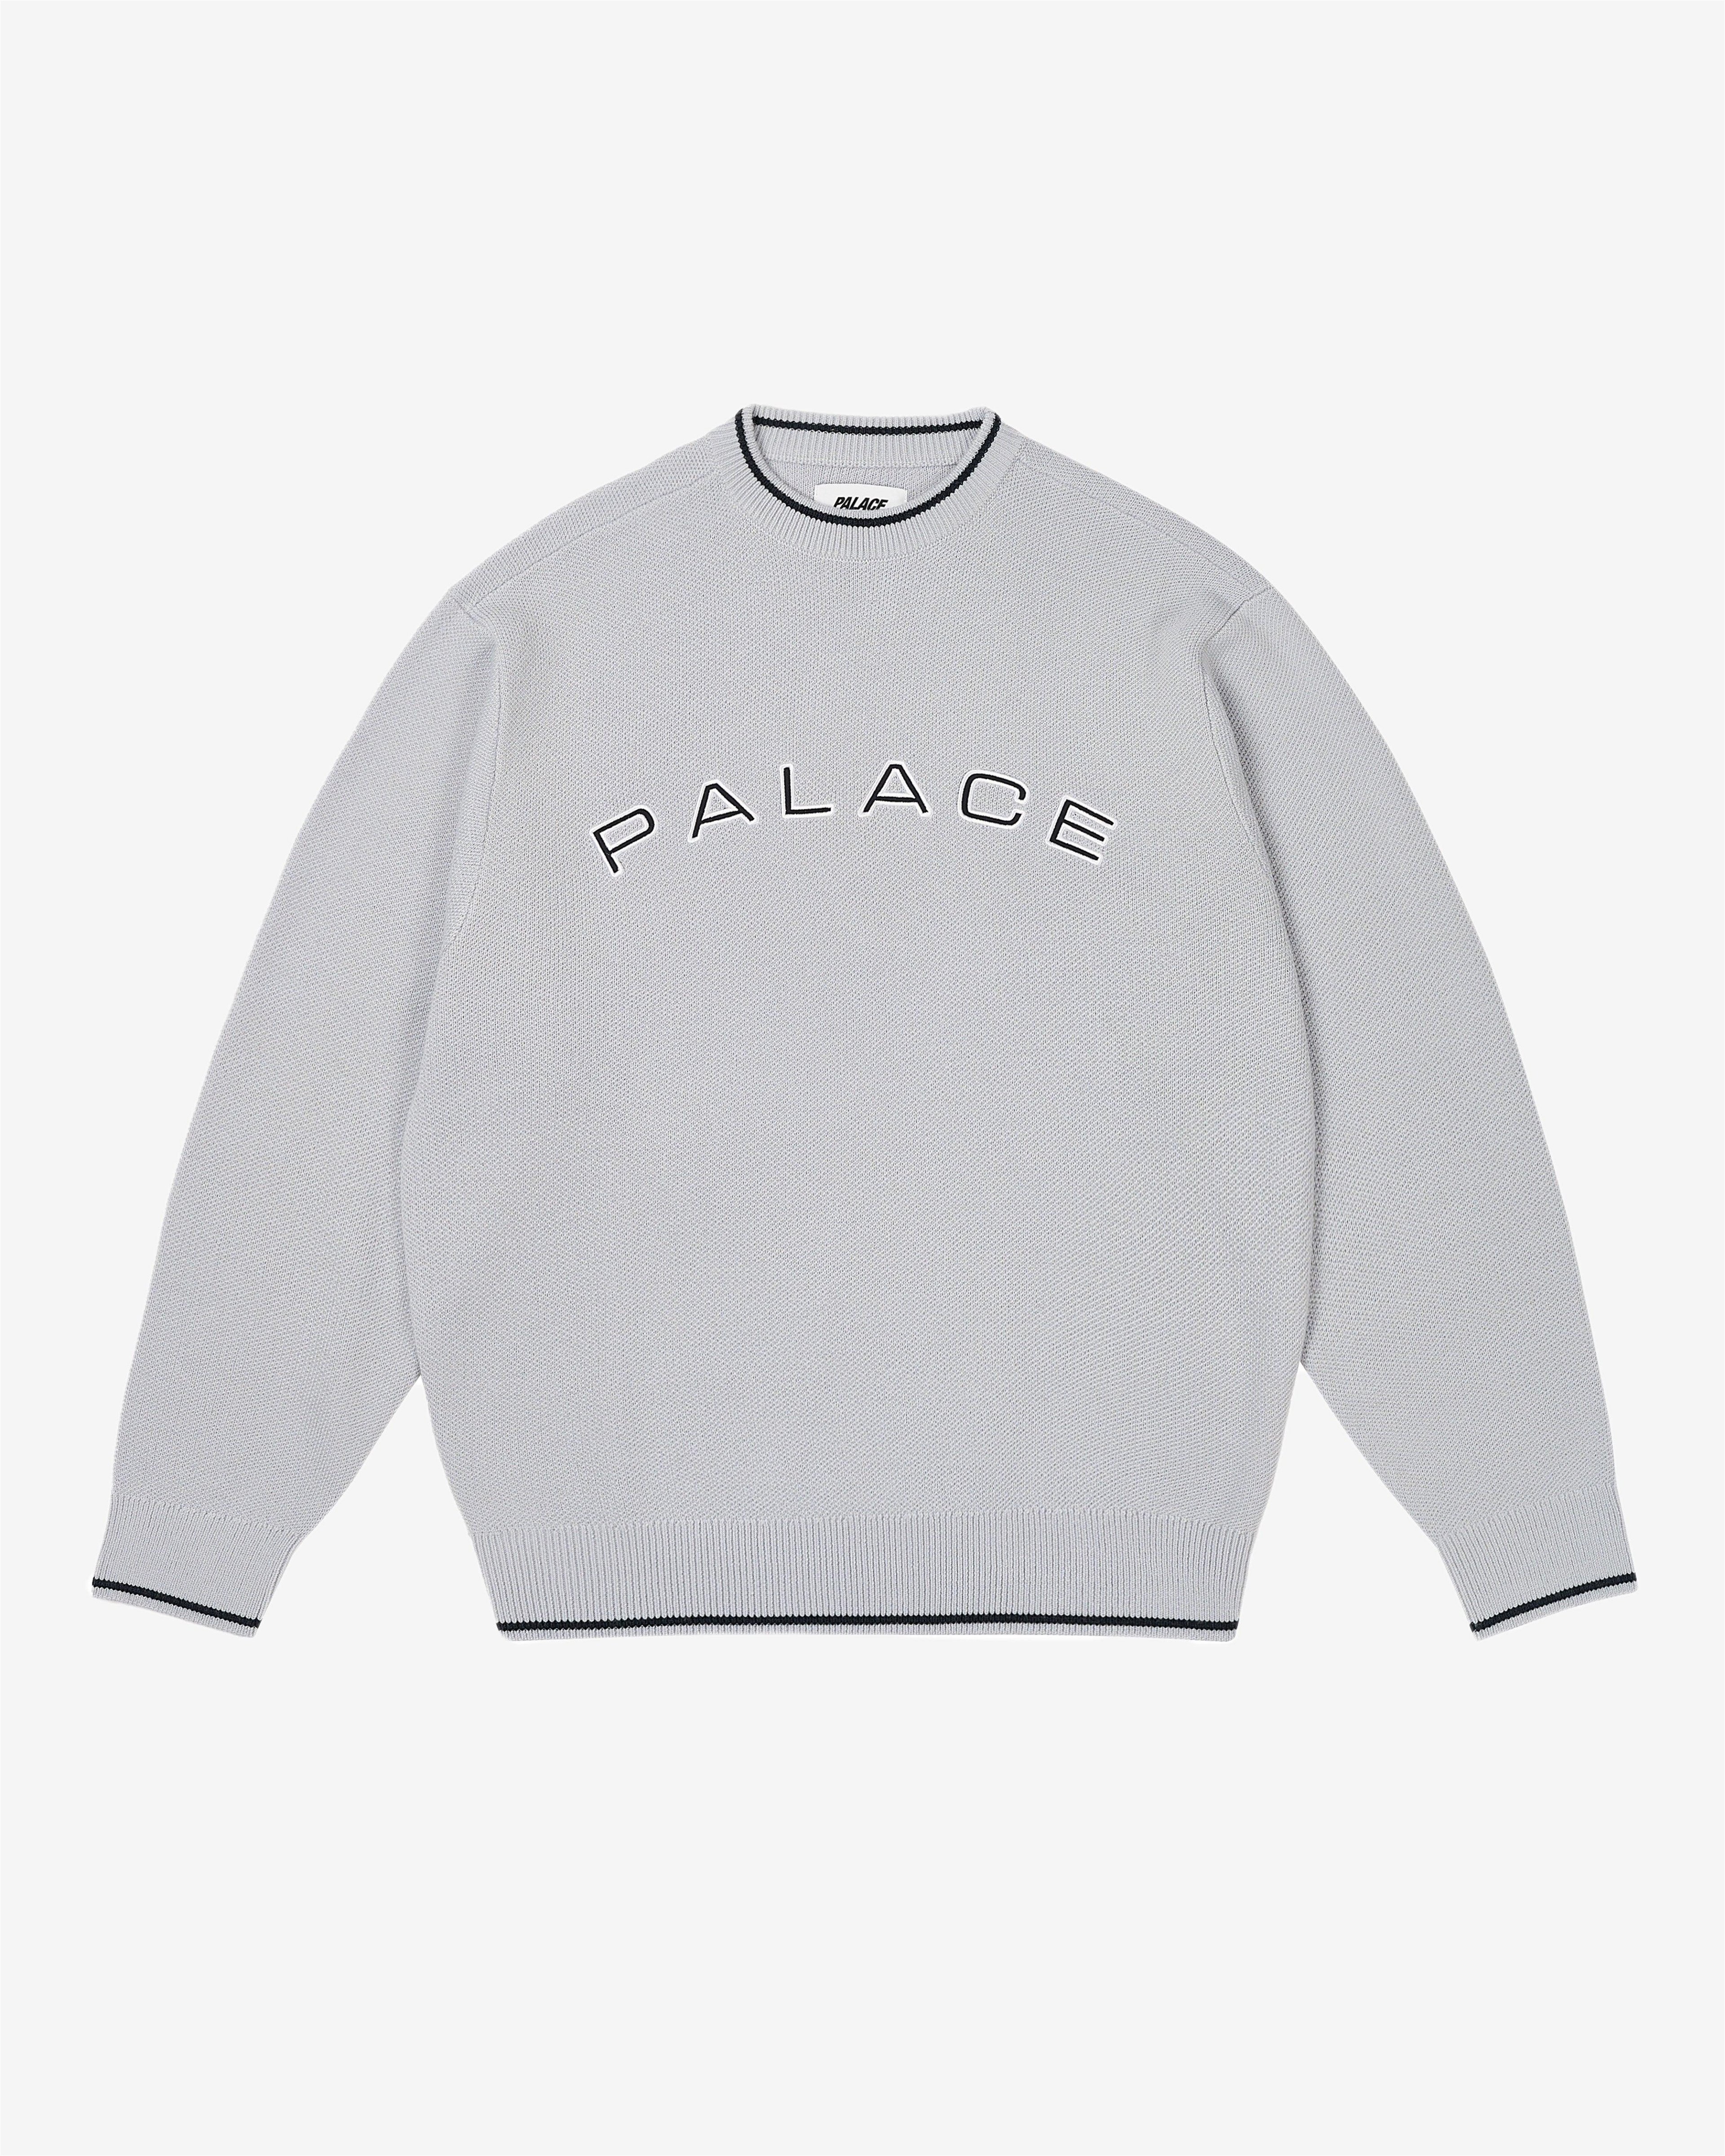 Palace - Men's Arc Knit - (Arctic Grey) by PALACE